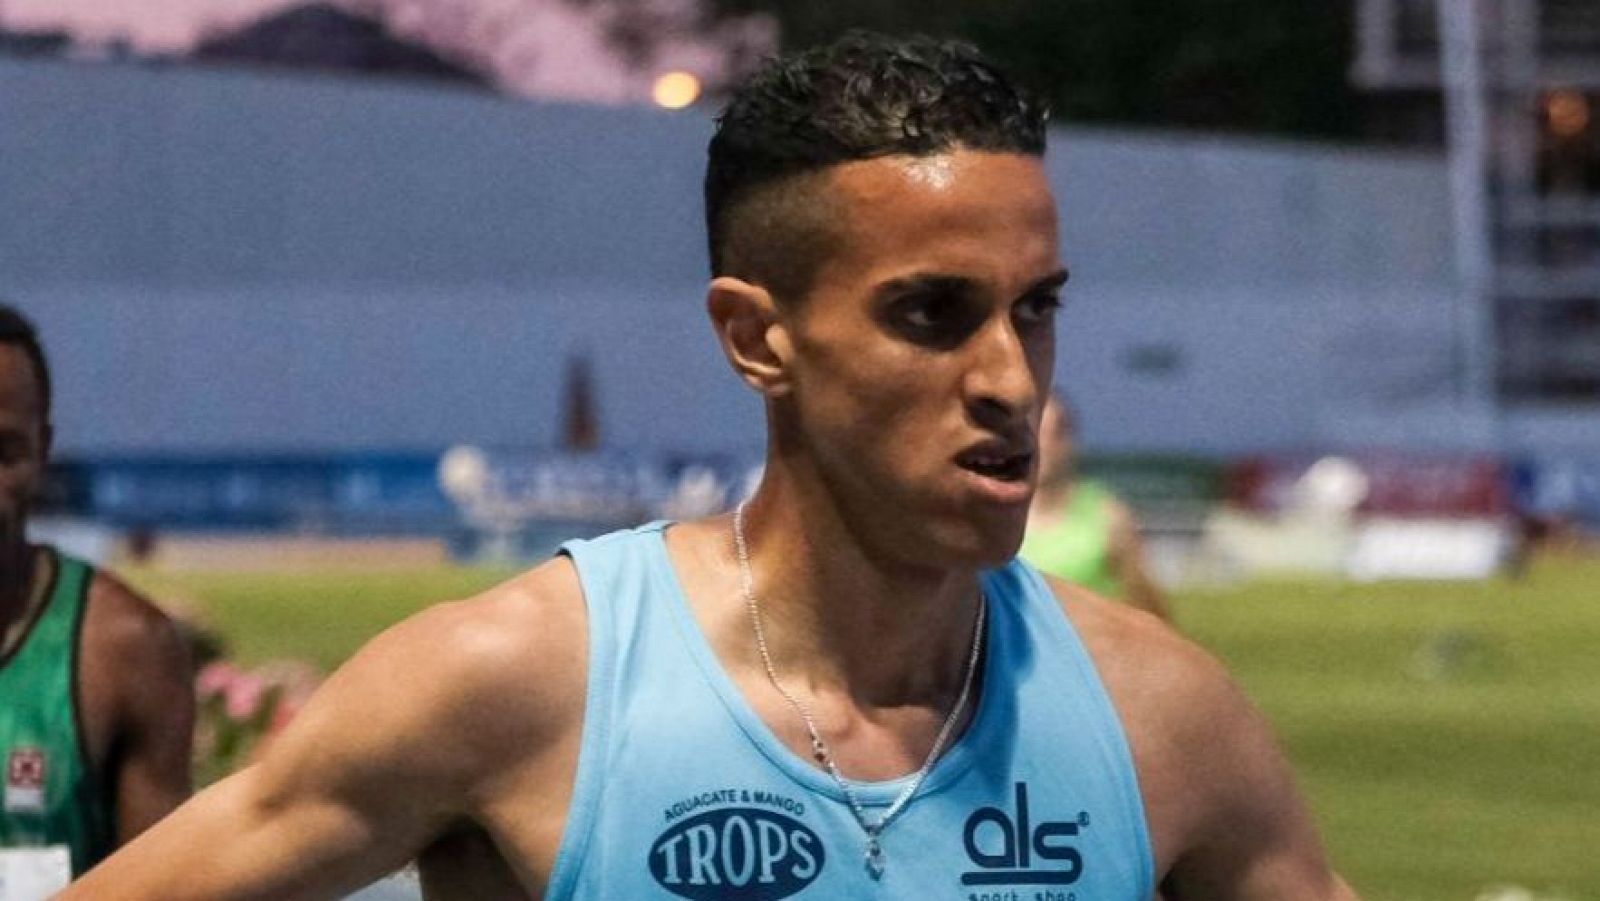 Oumaiz, campeón de España de 5.000 metros, positivo por GHRP-2